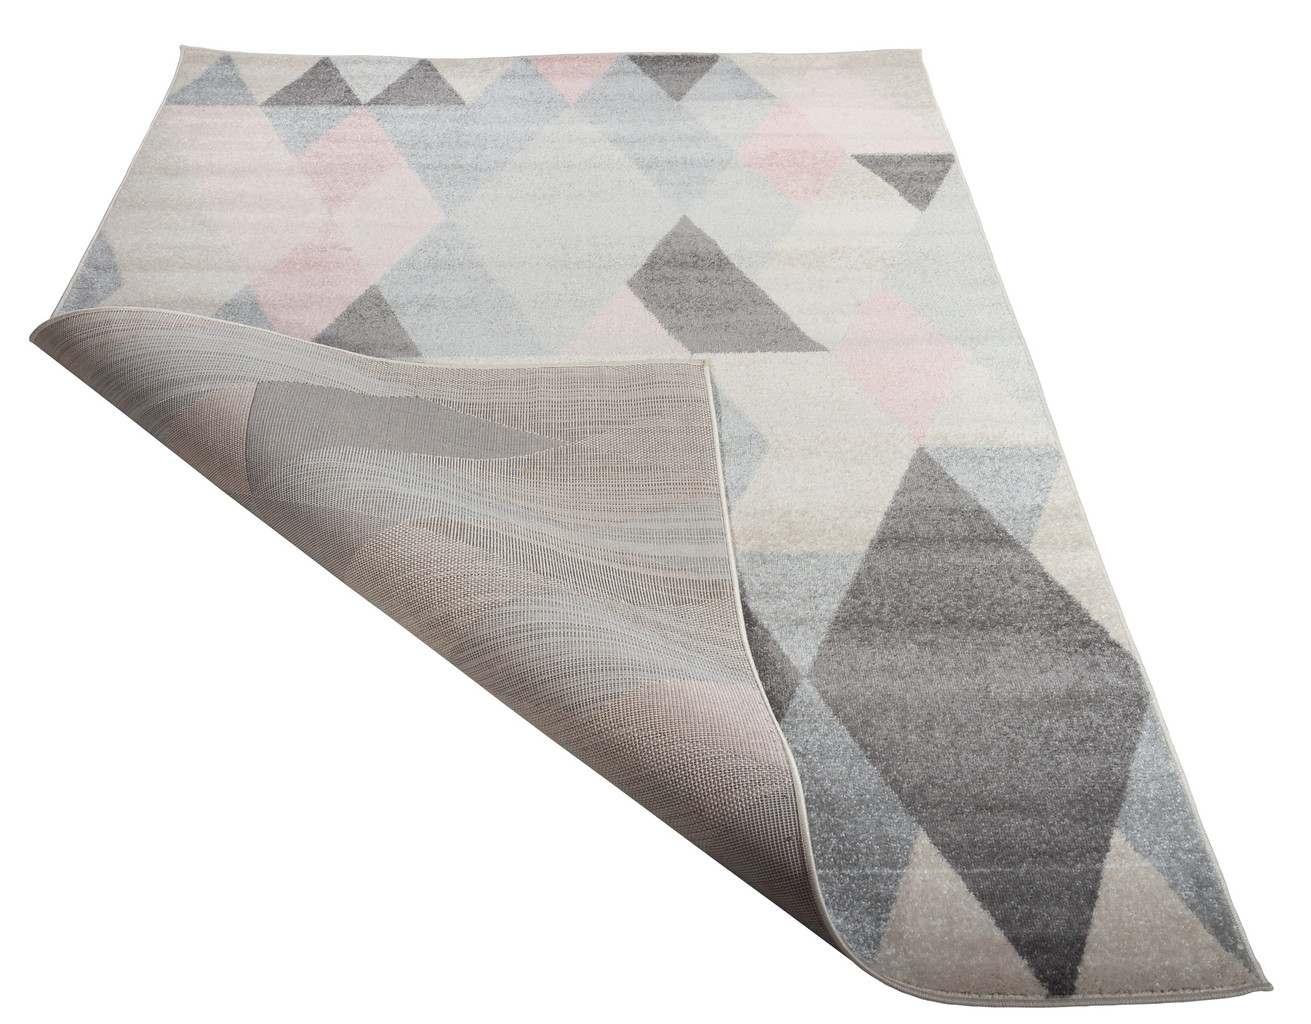 Nowoczesny dywan w ciekawy wzór różowe i szare romby, trójkąty Pearl Stream 09 - Carpetforyou zdjęcie 3